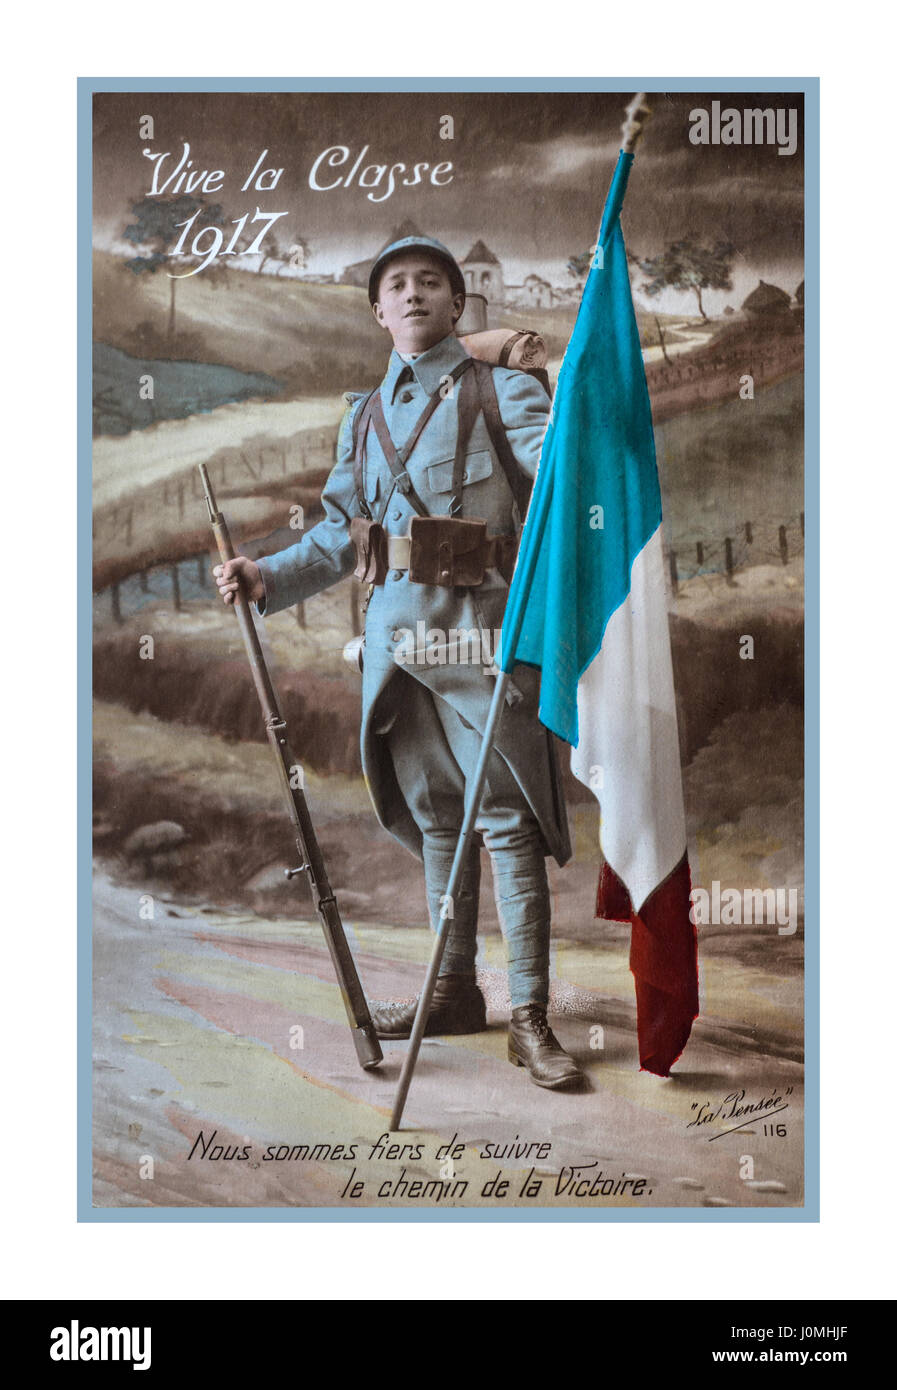 WW1 1914-1918 Propaganda Postkarte mit Französische Infanterie Soldat holding Trikolore, datiert 1917 aus der "Battlefront" in Frankreich, "Lang lebe die Klasse von 1917... Wir sind stolz darauf, den Weg des Sieges zu folgen.". Stockfoto